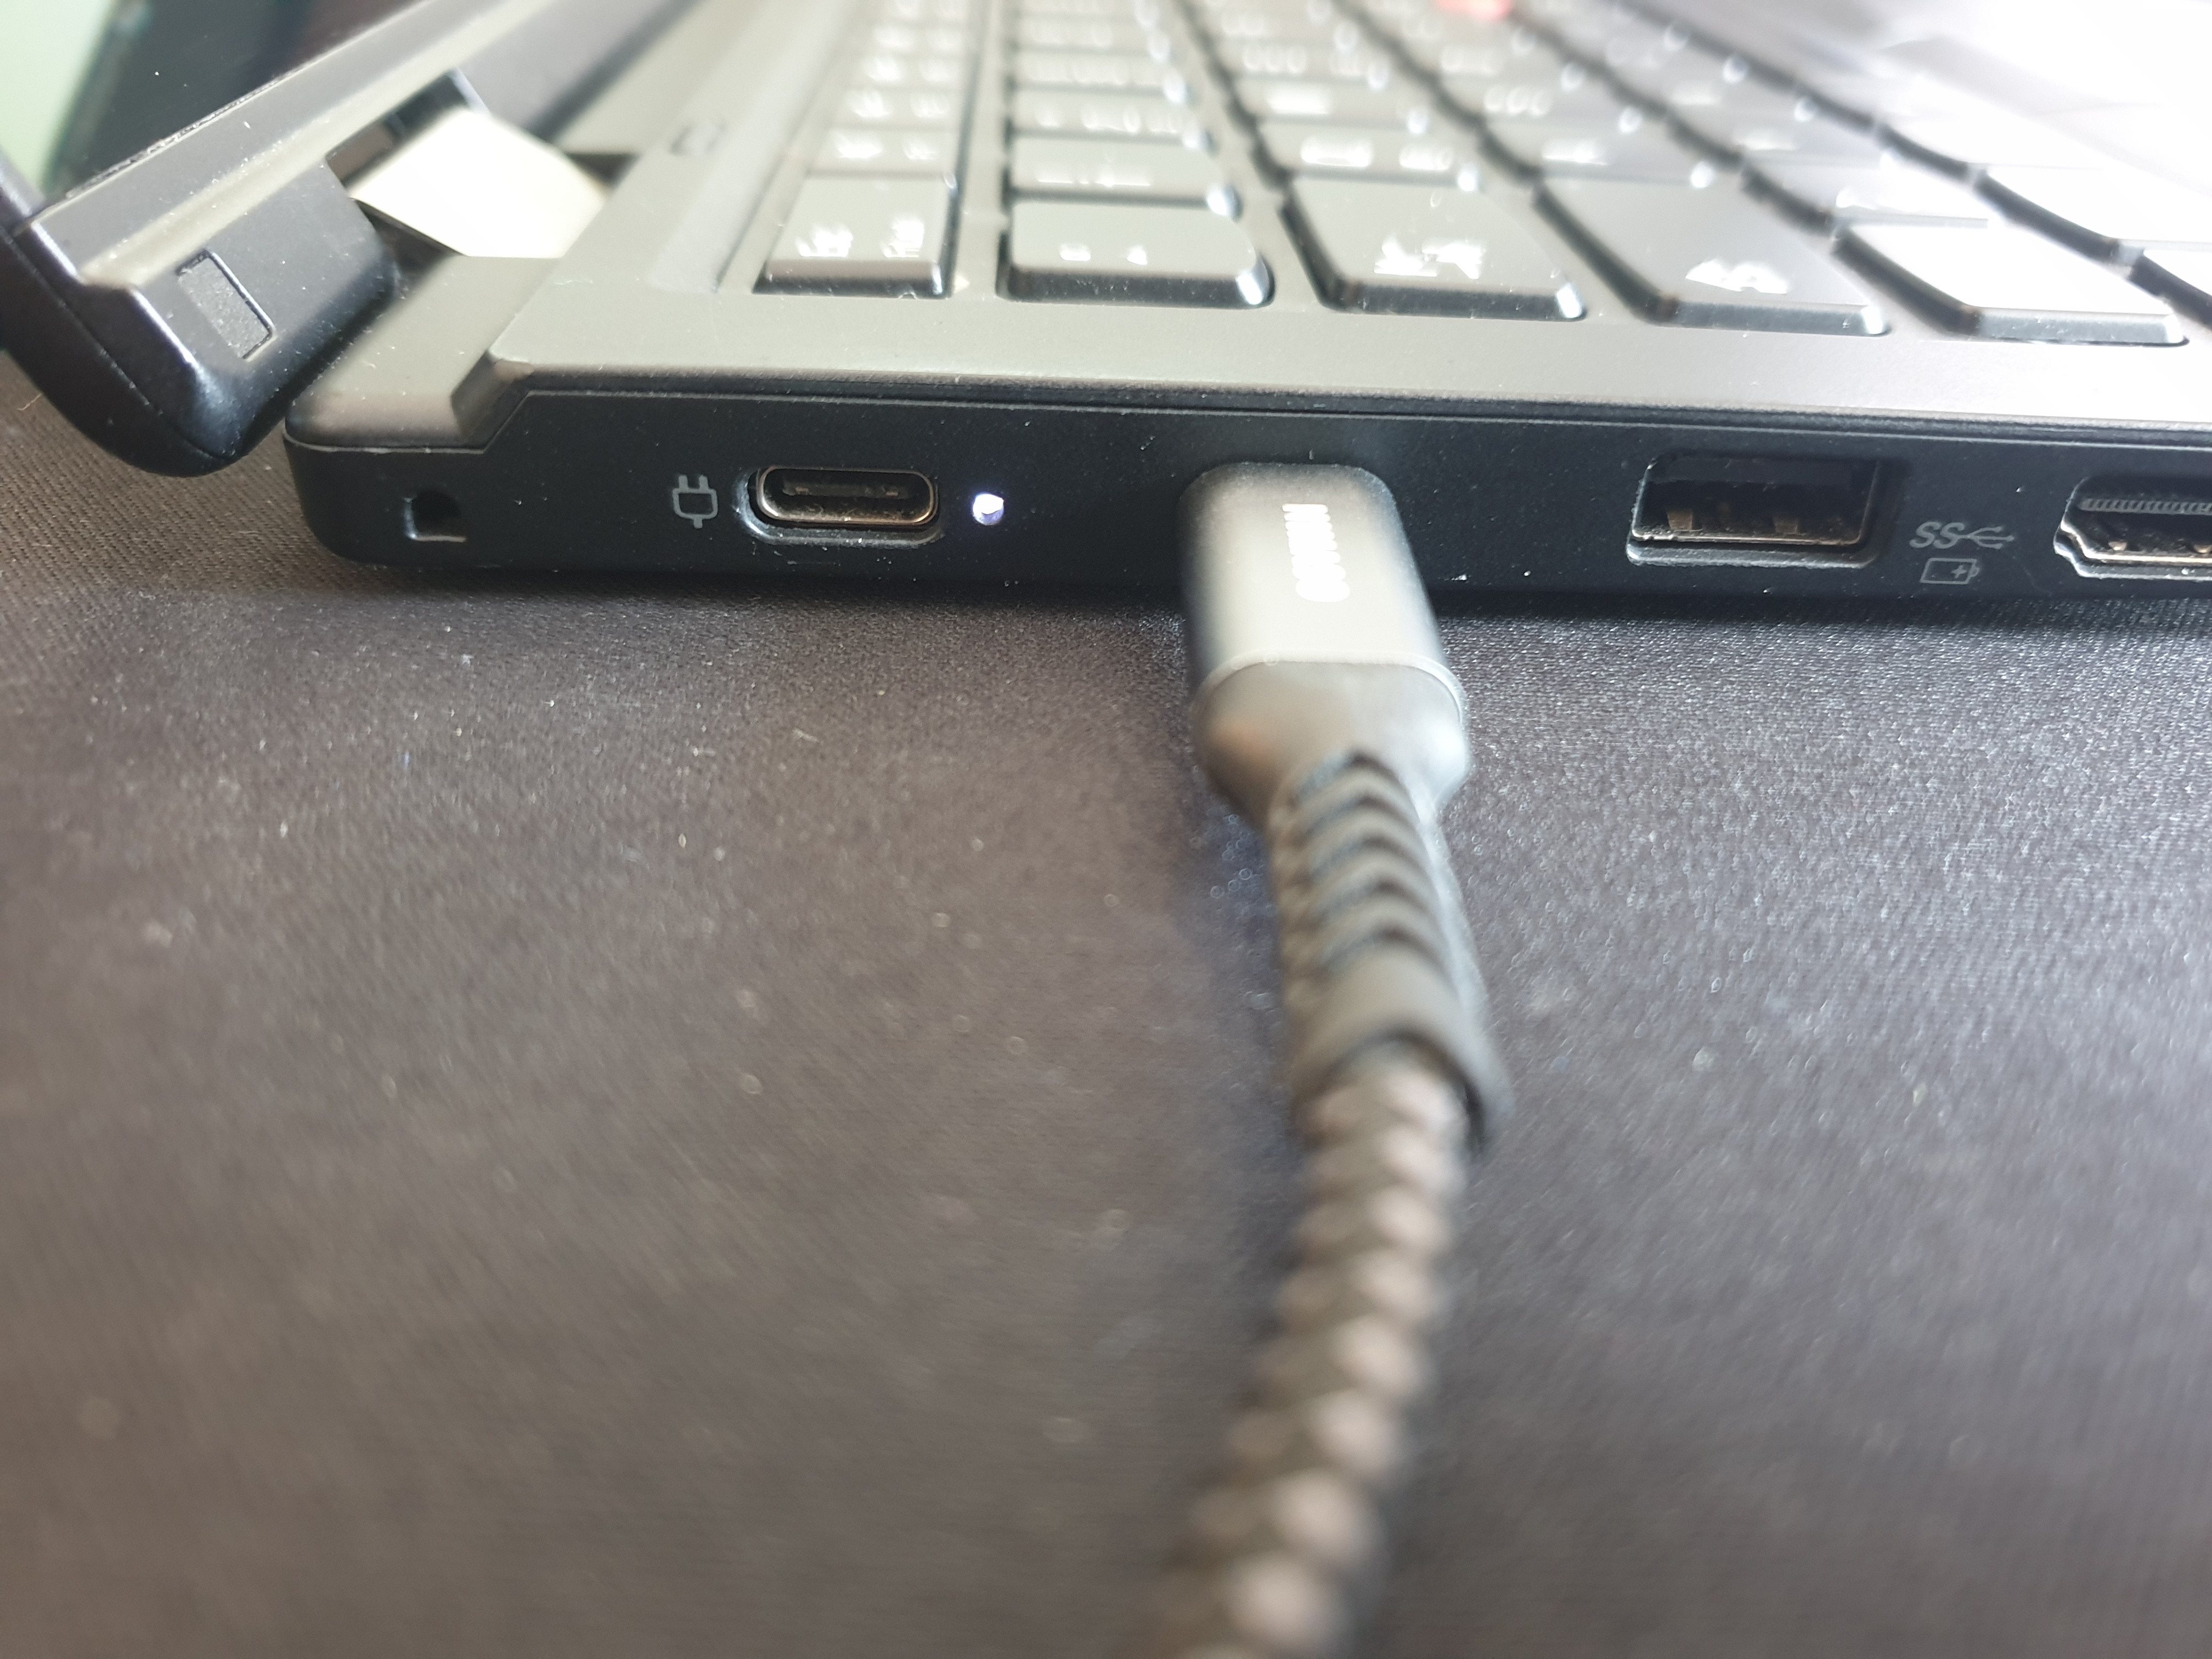 USB-C-charging-port-broken-Tinkpad-L380 - English Community - LENOVO  COMUNIDAD